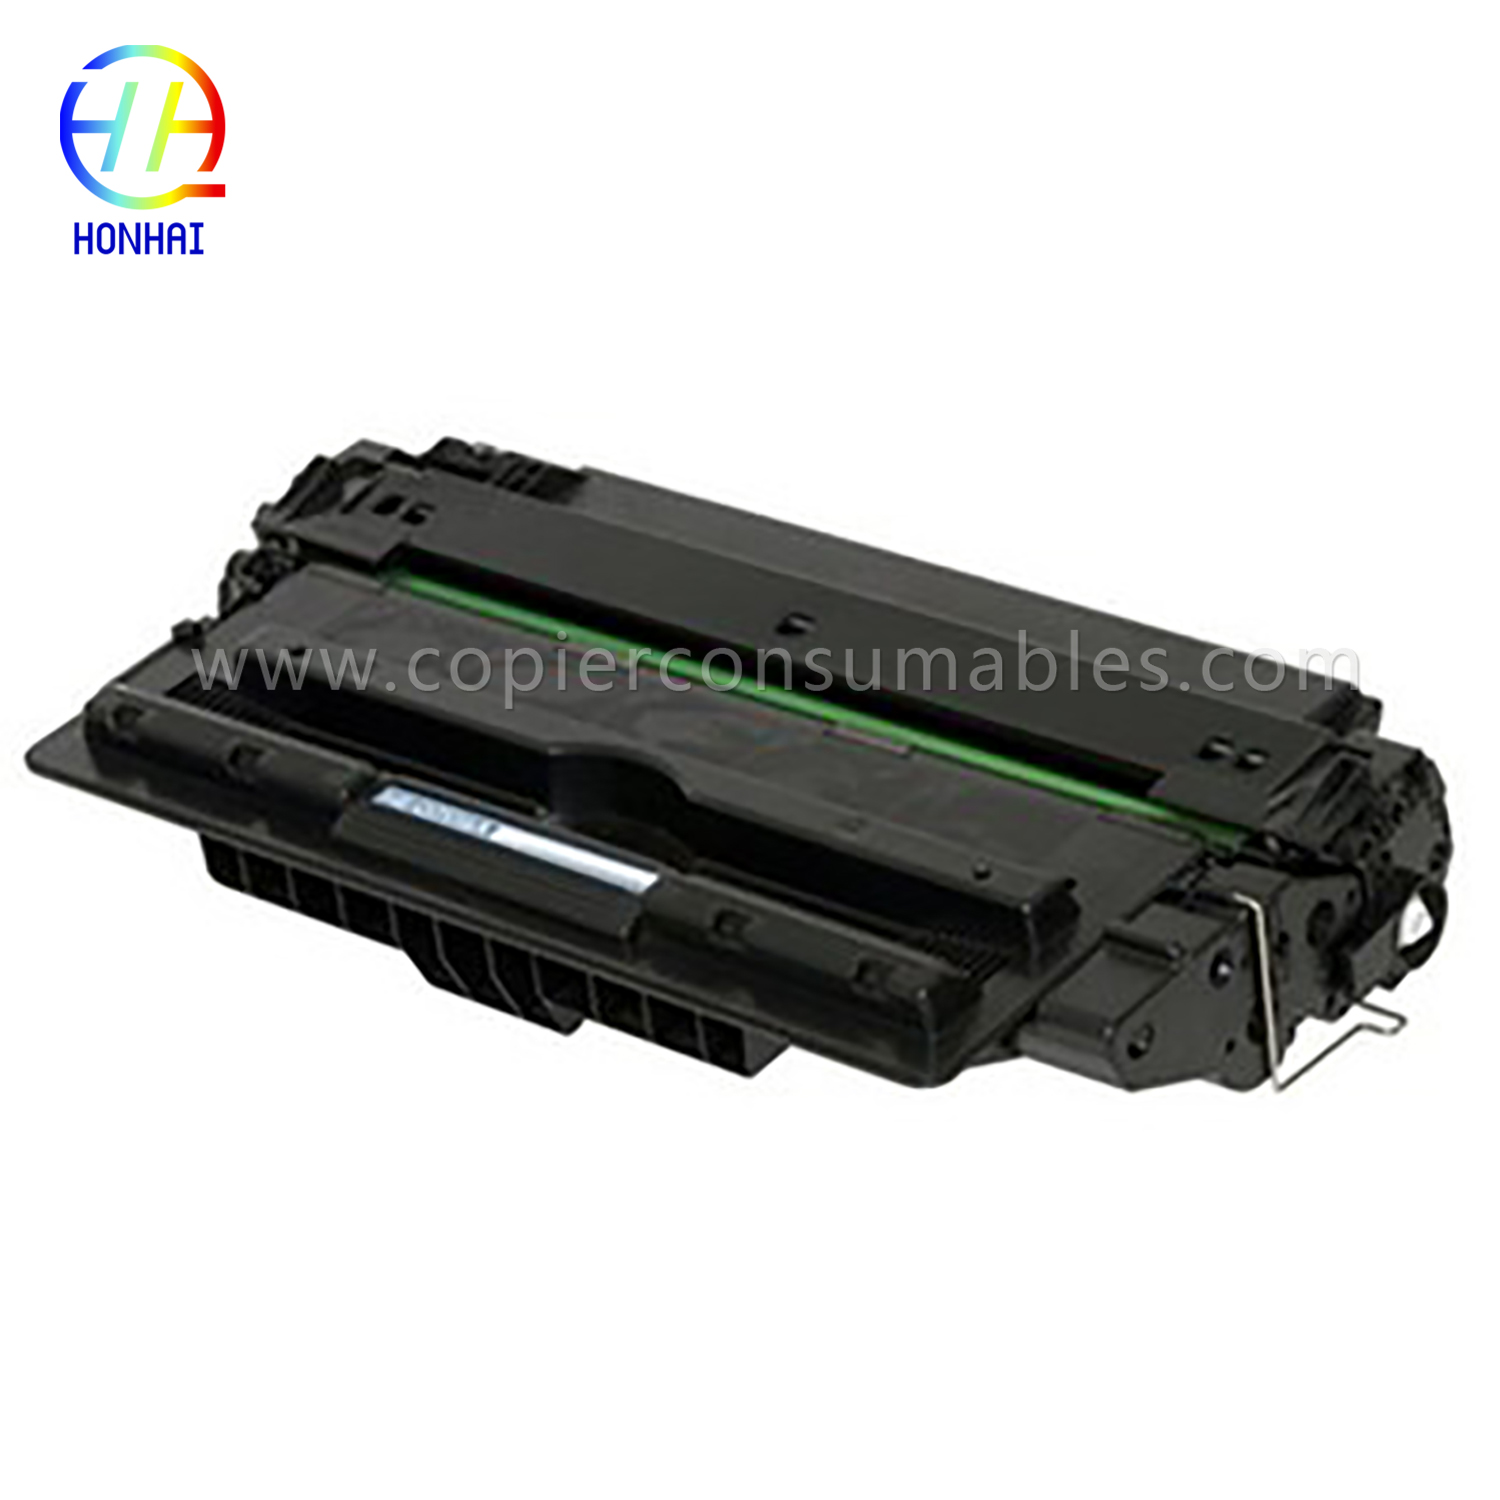 Cartuccia toner per HP LaserJet 5200 5200n 5200tn 5200dtn 5200L (Q7516A)